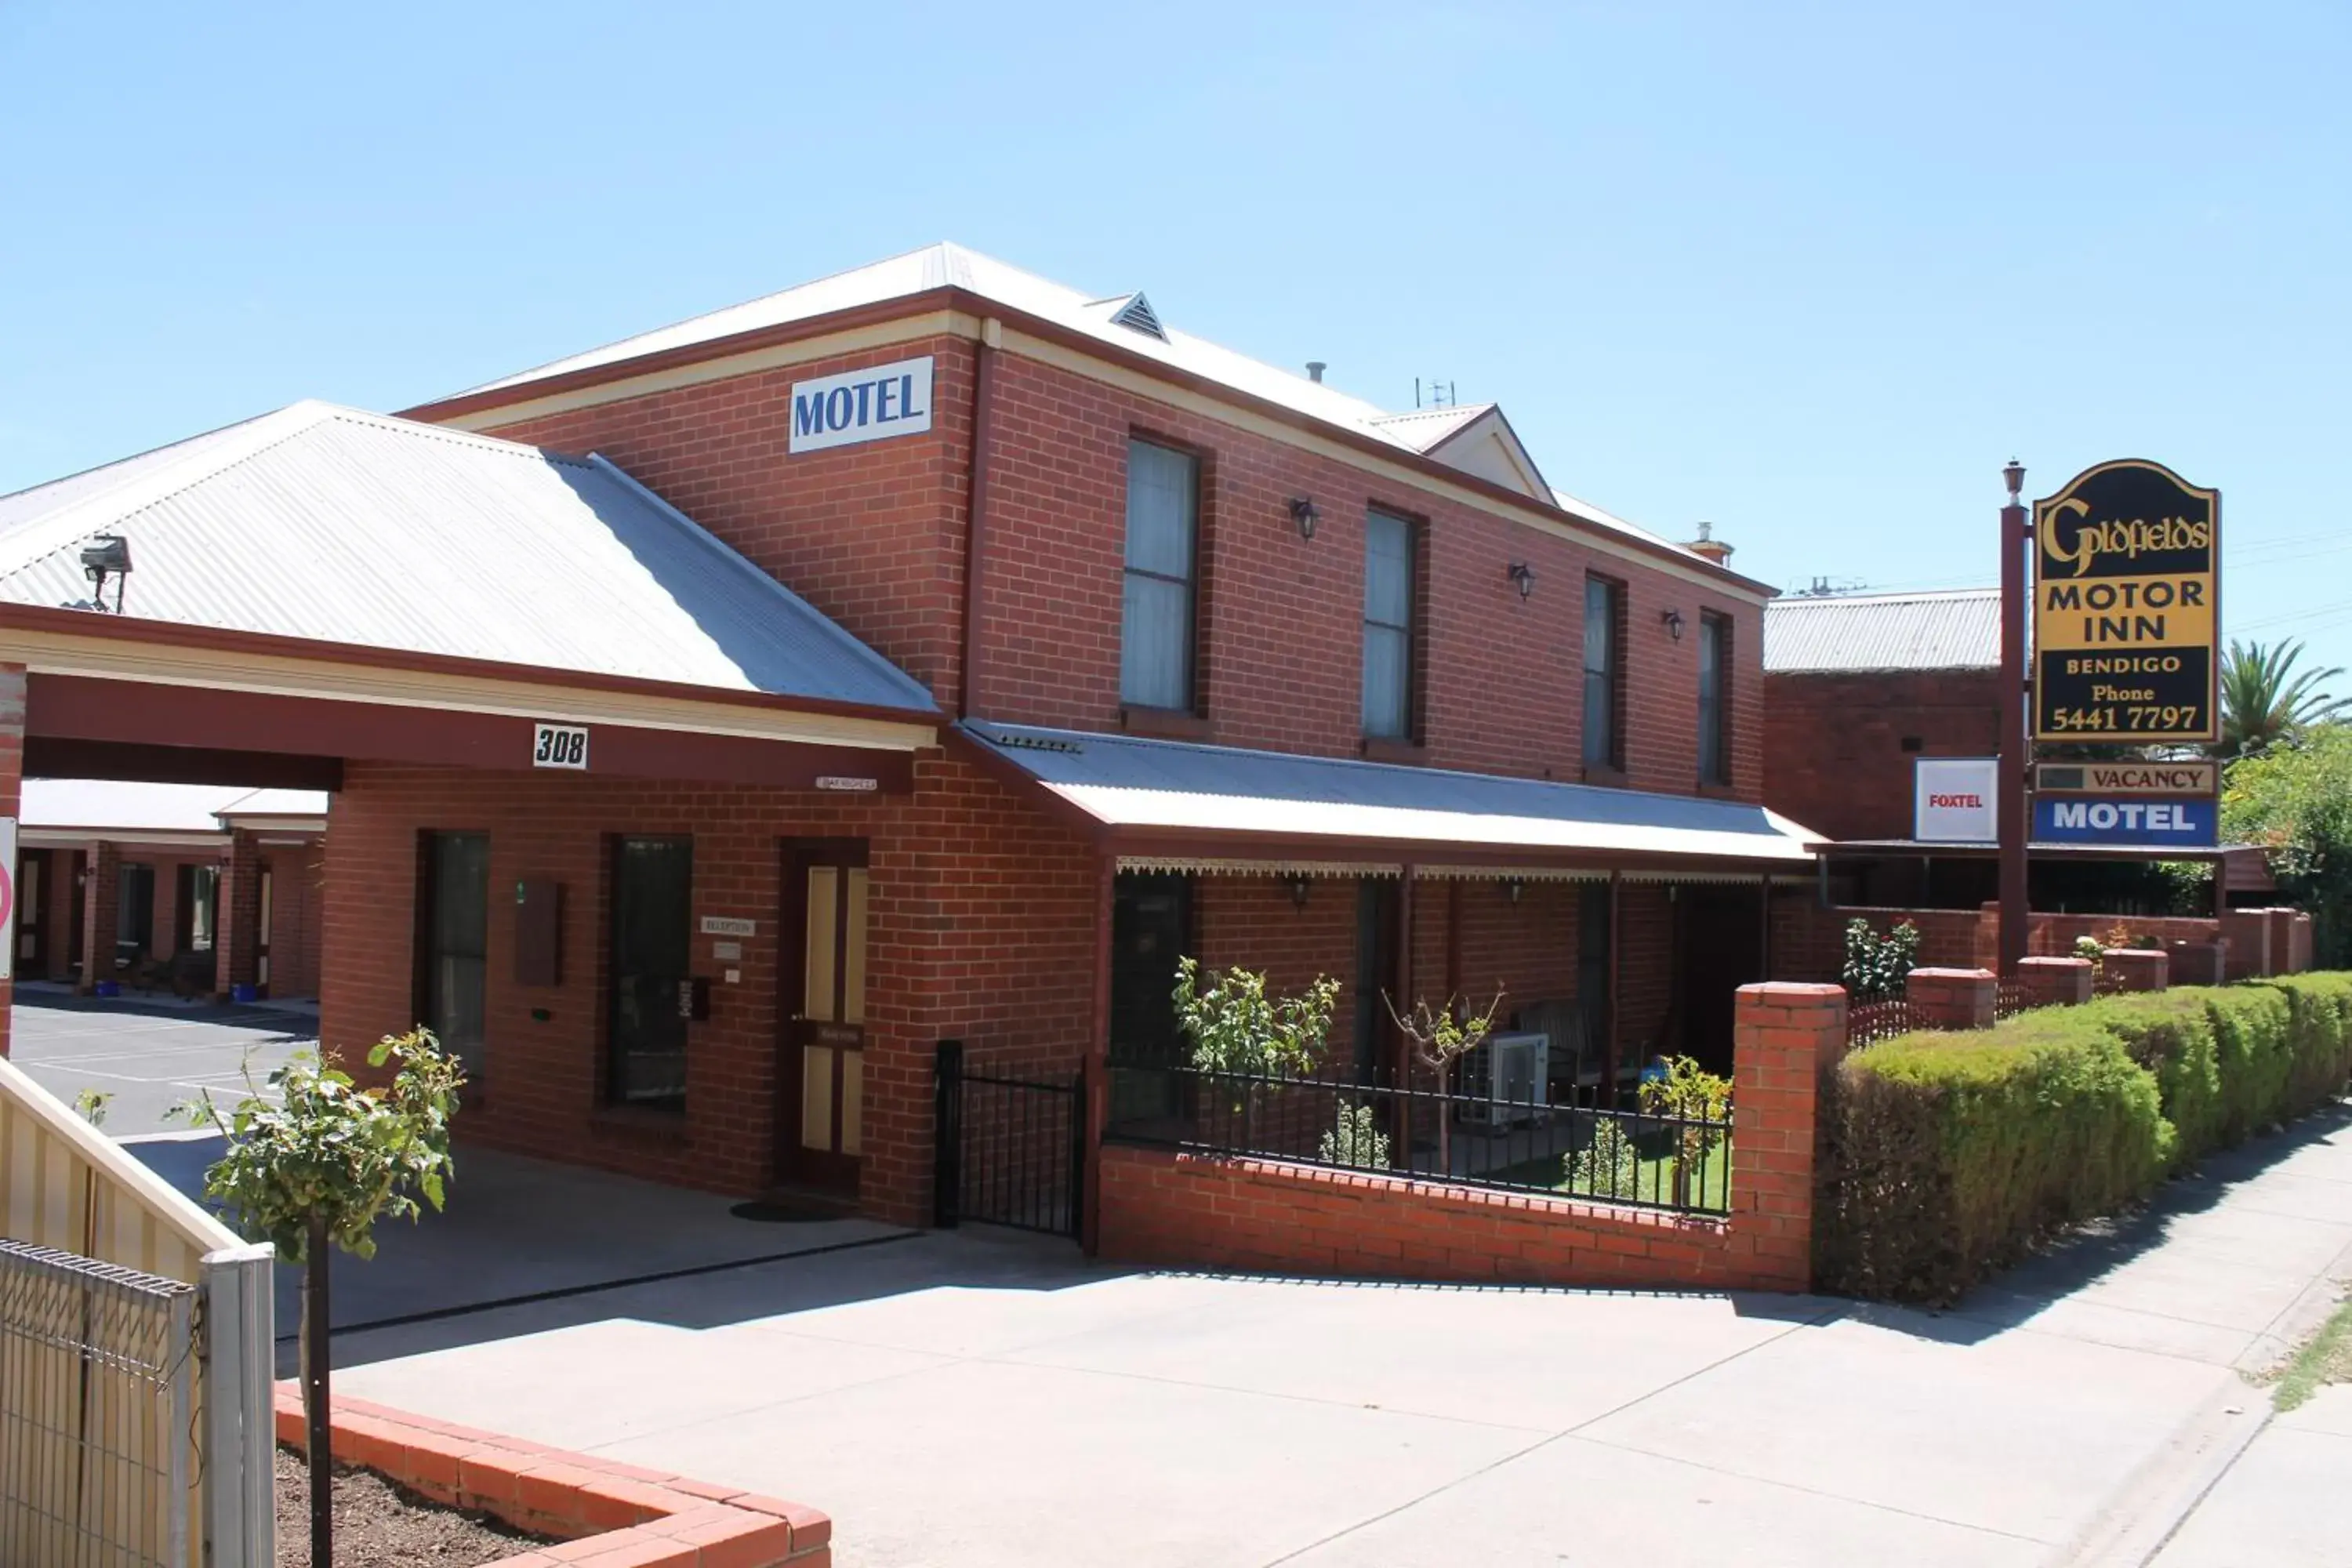 Facade/entrance, Property Building in Bendigo Goldfields Motor Inn